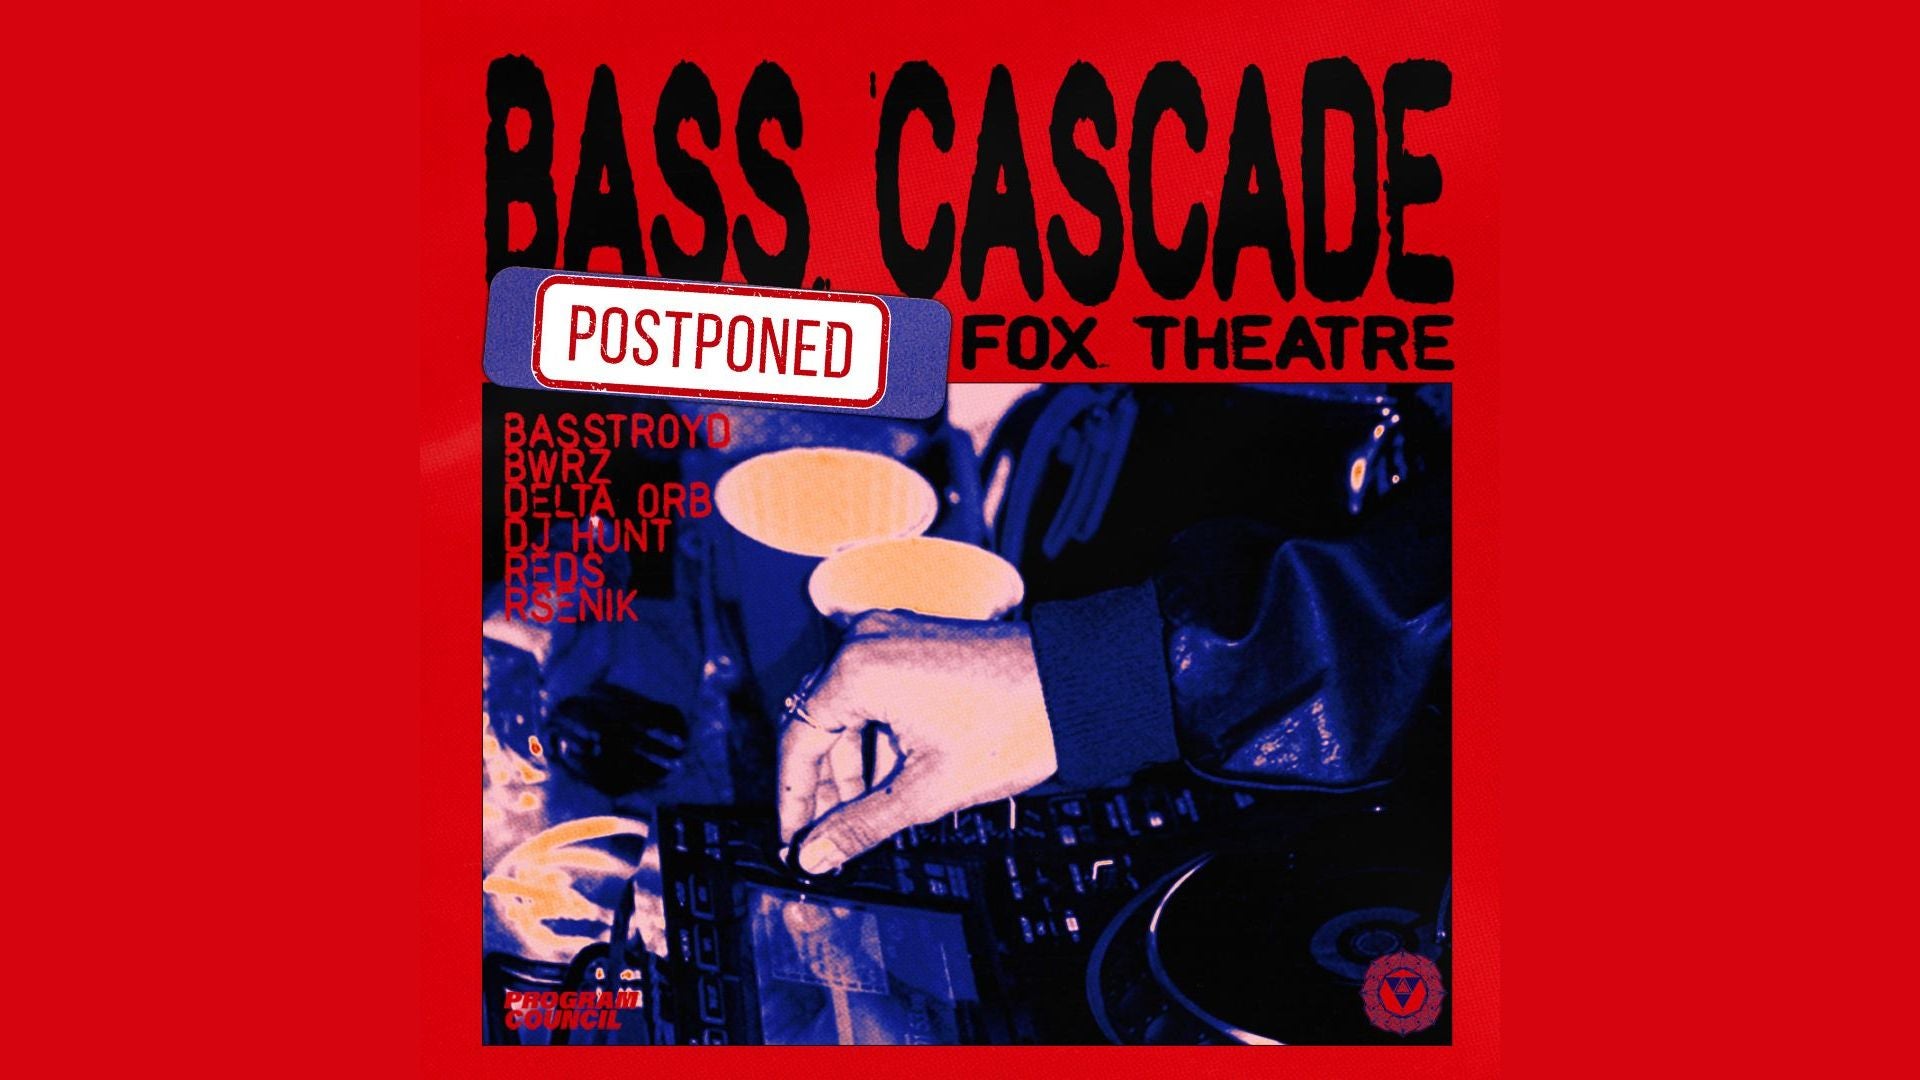 More Info for BASS CASCADE feat. BASSTROYD, BWRZ, DELTA ORB, DJ HUNT, REDS, RSENIK